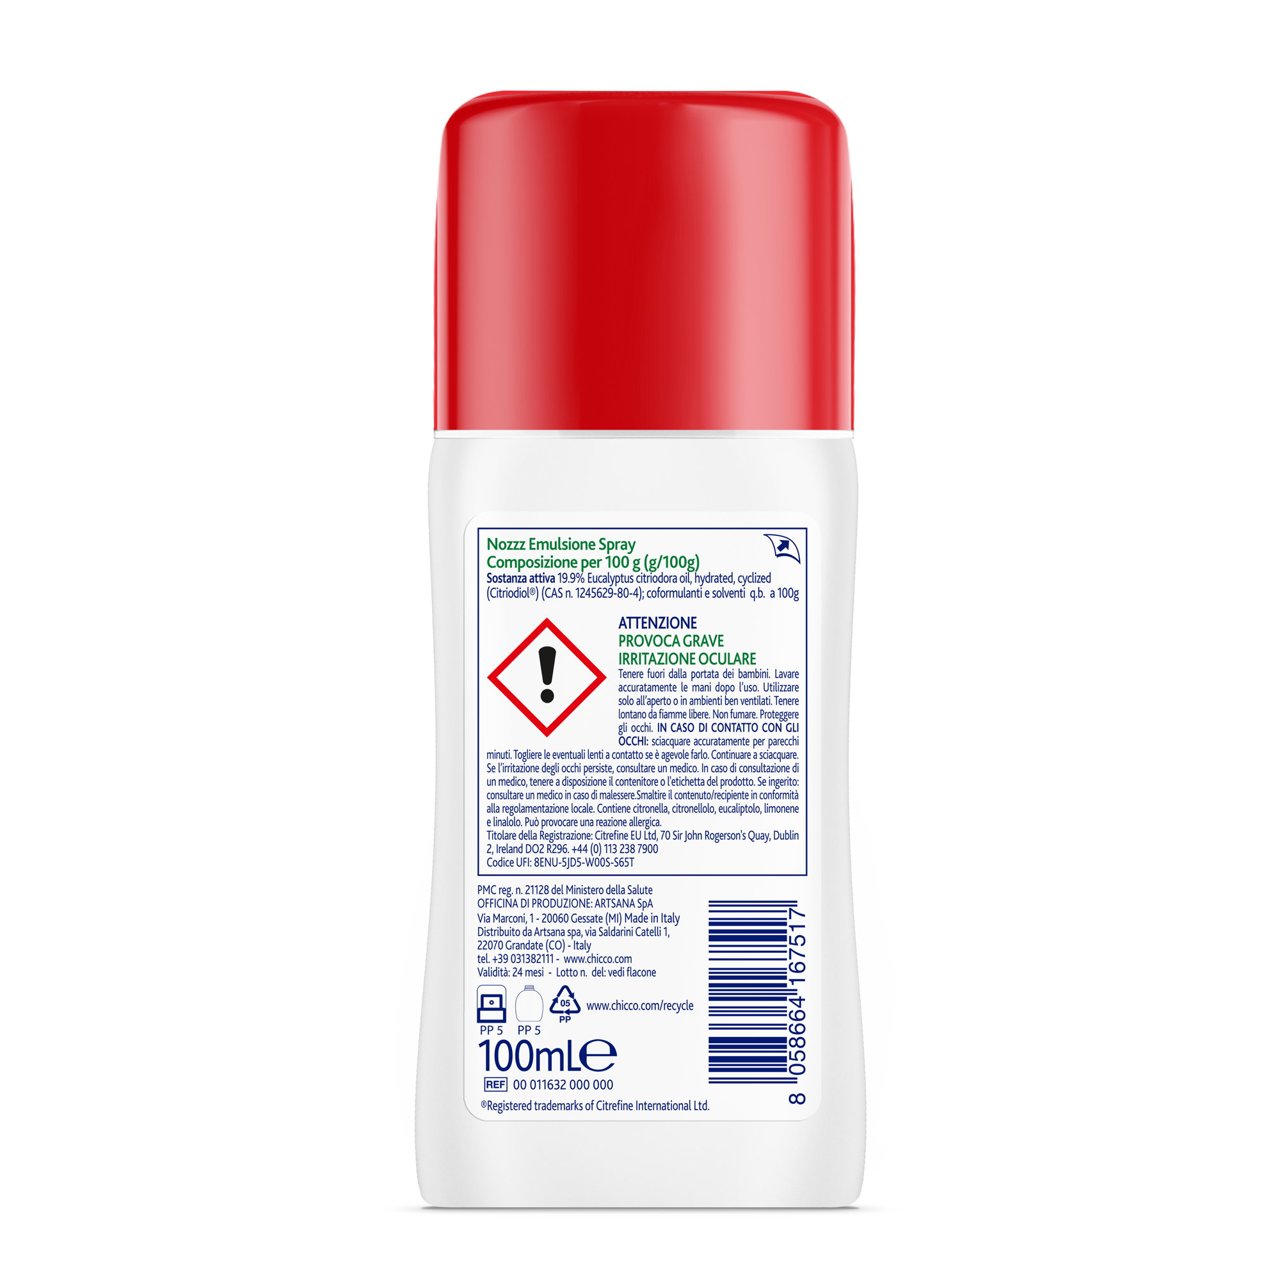 Emulsione spray insetto repellente Chicco Nozzz